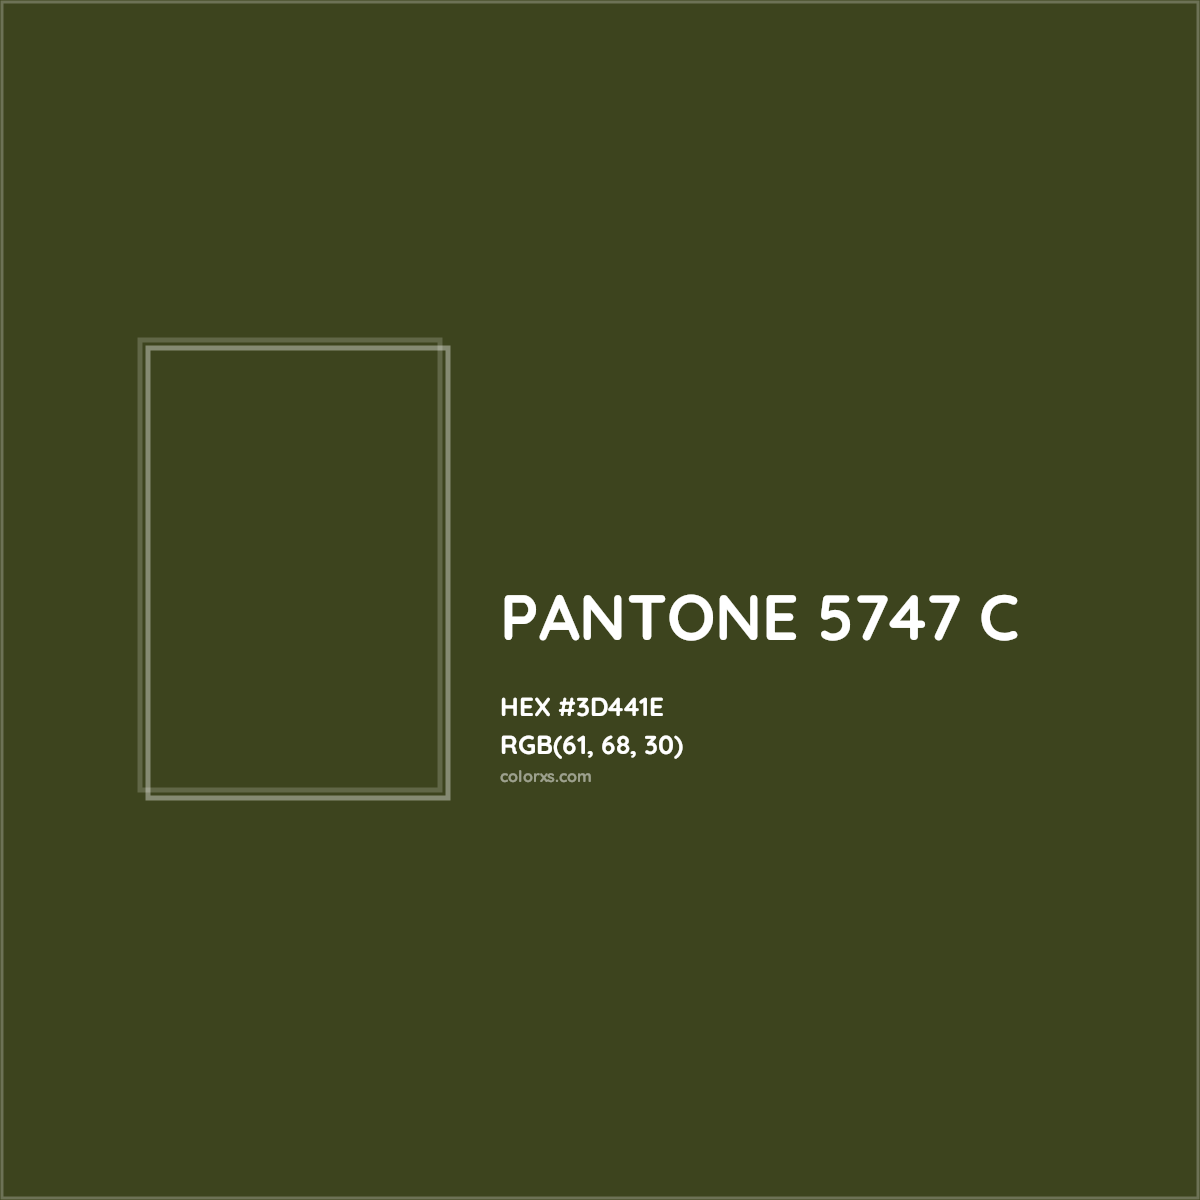 HEX #3D441E PANTONE 5747 C CMS Pantone PMS - Color Code